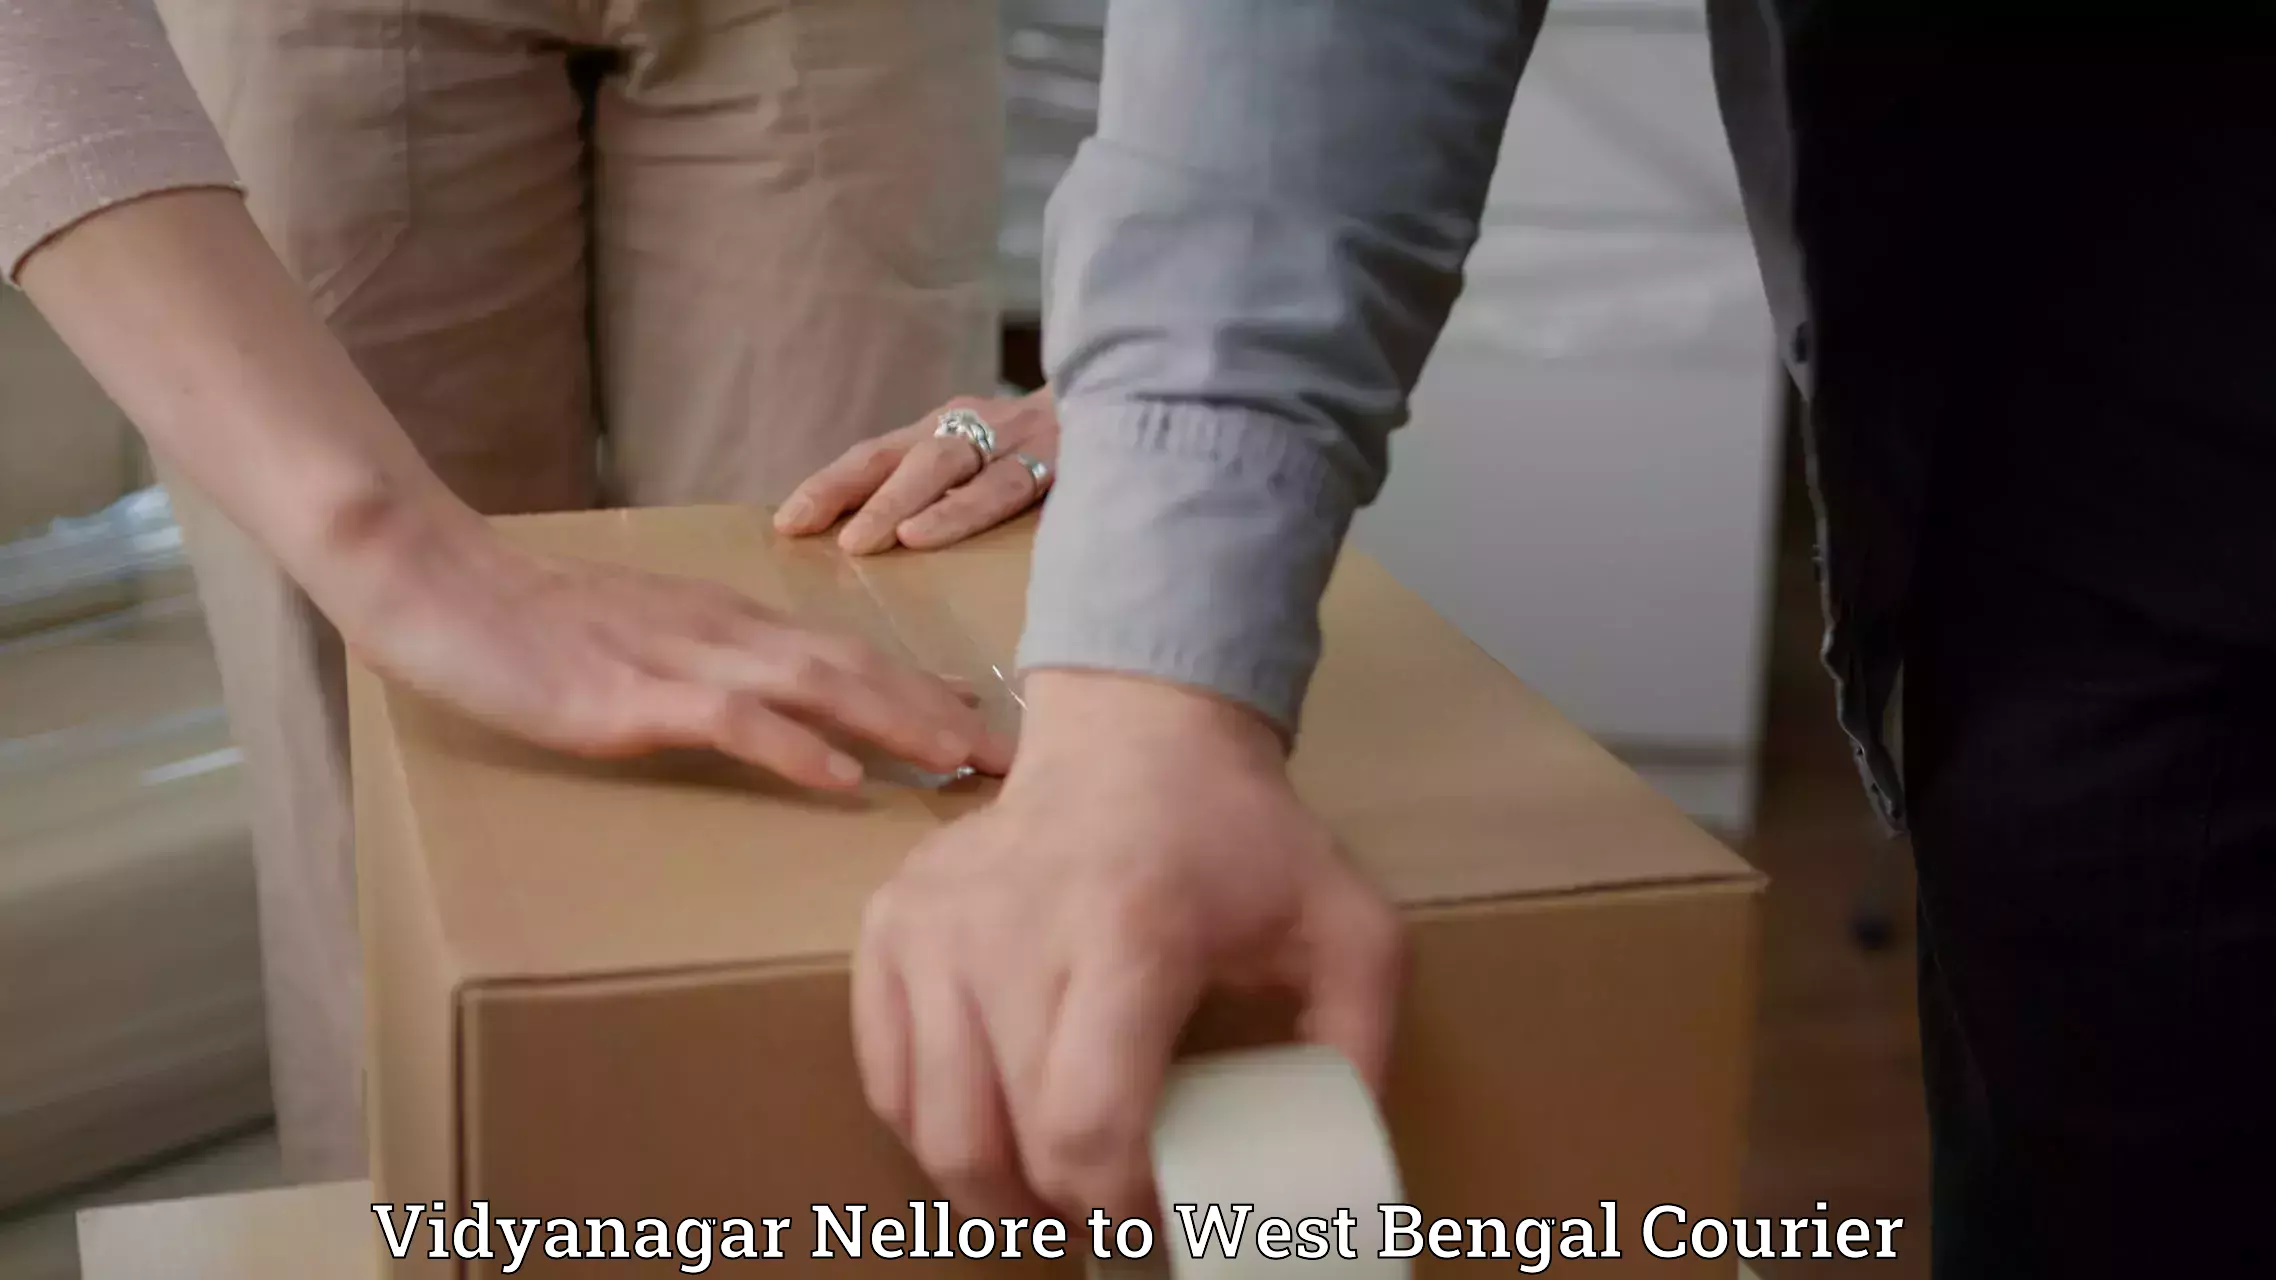 Baggage transport scheduler Vidyanagar Nellore to West Bengal